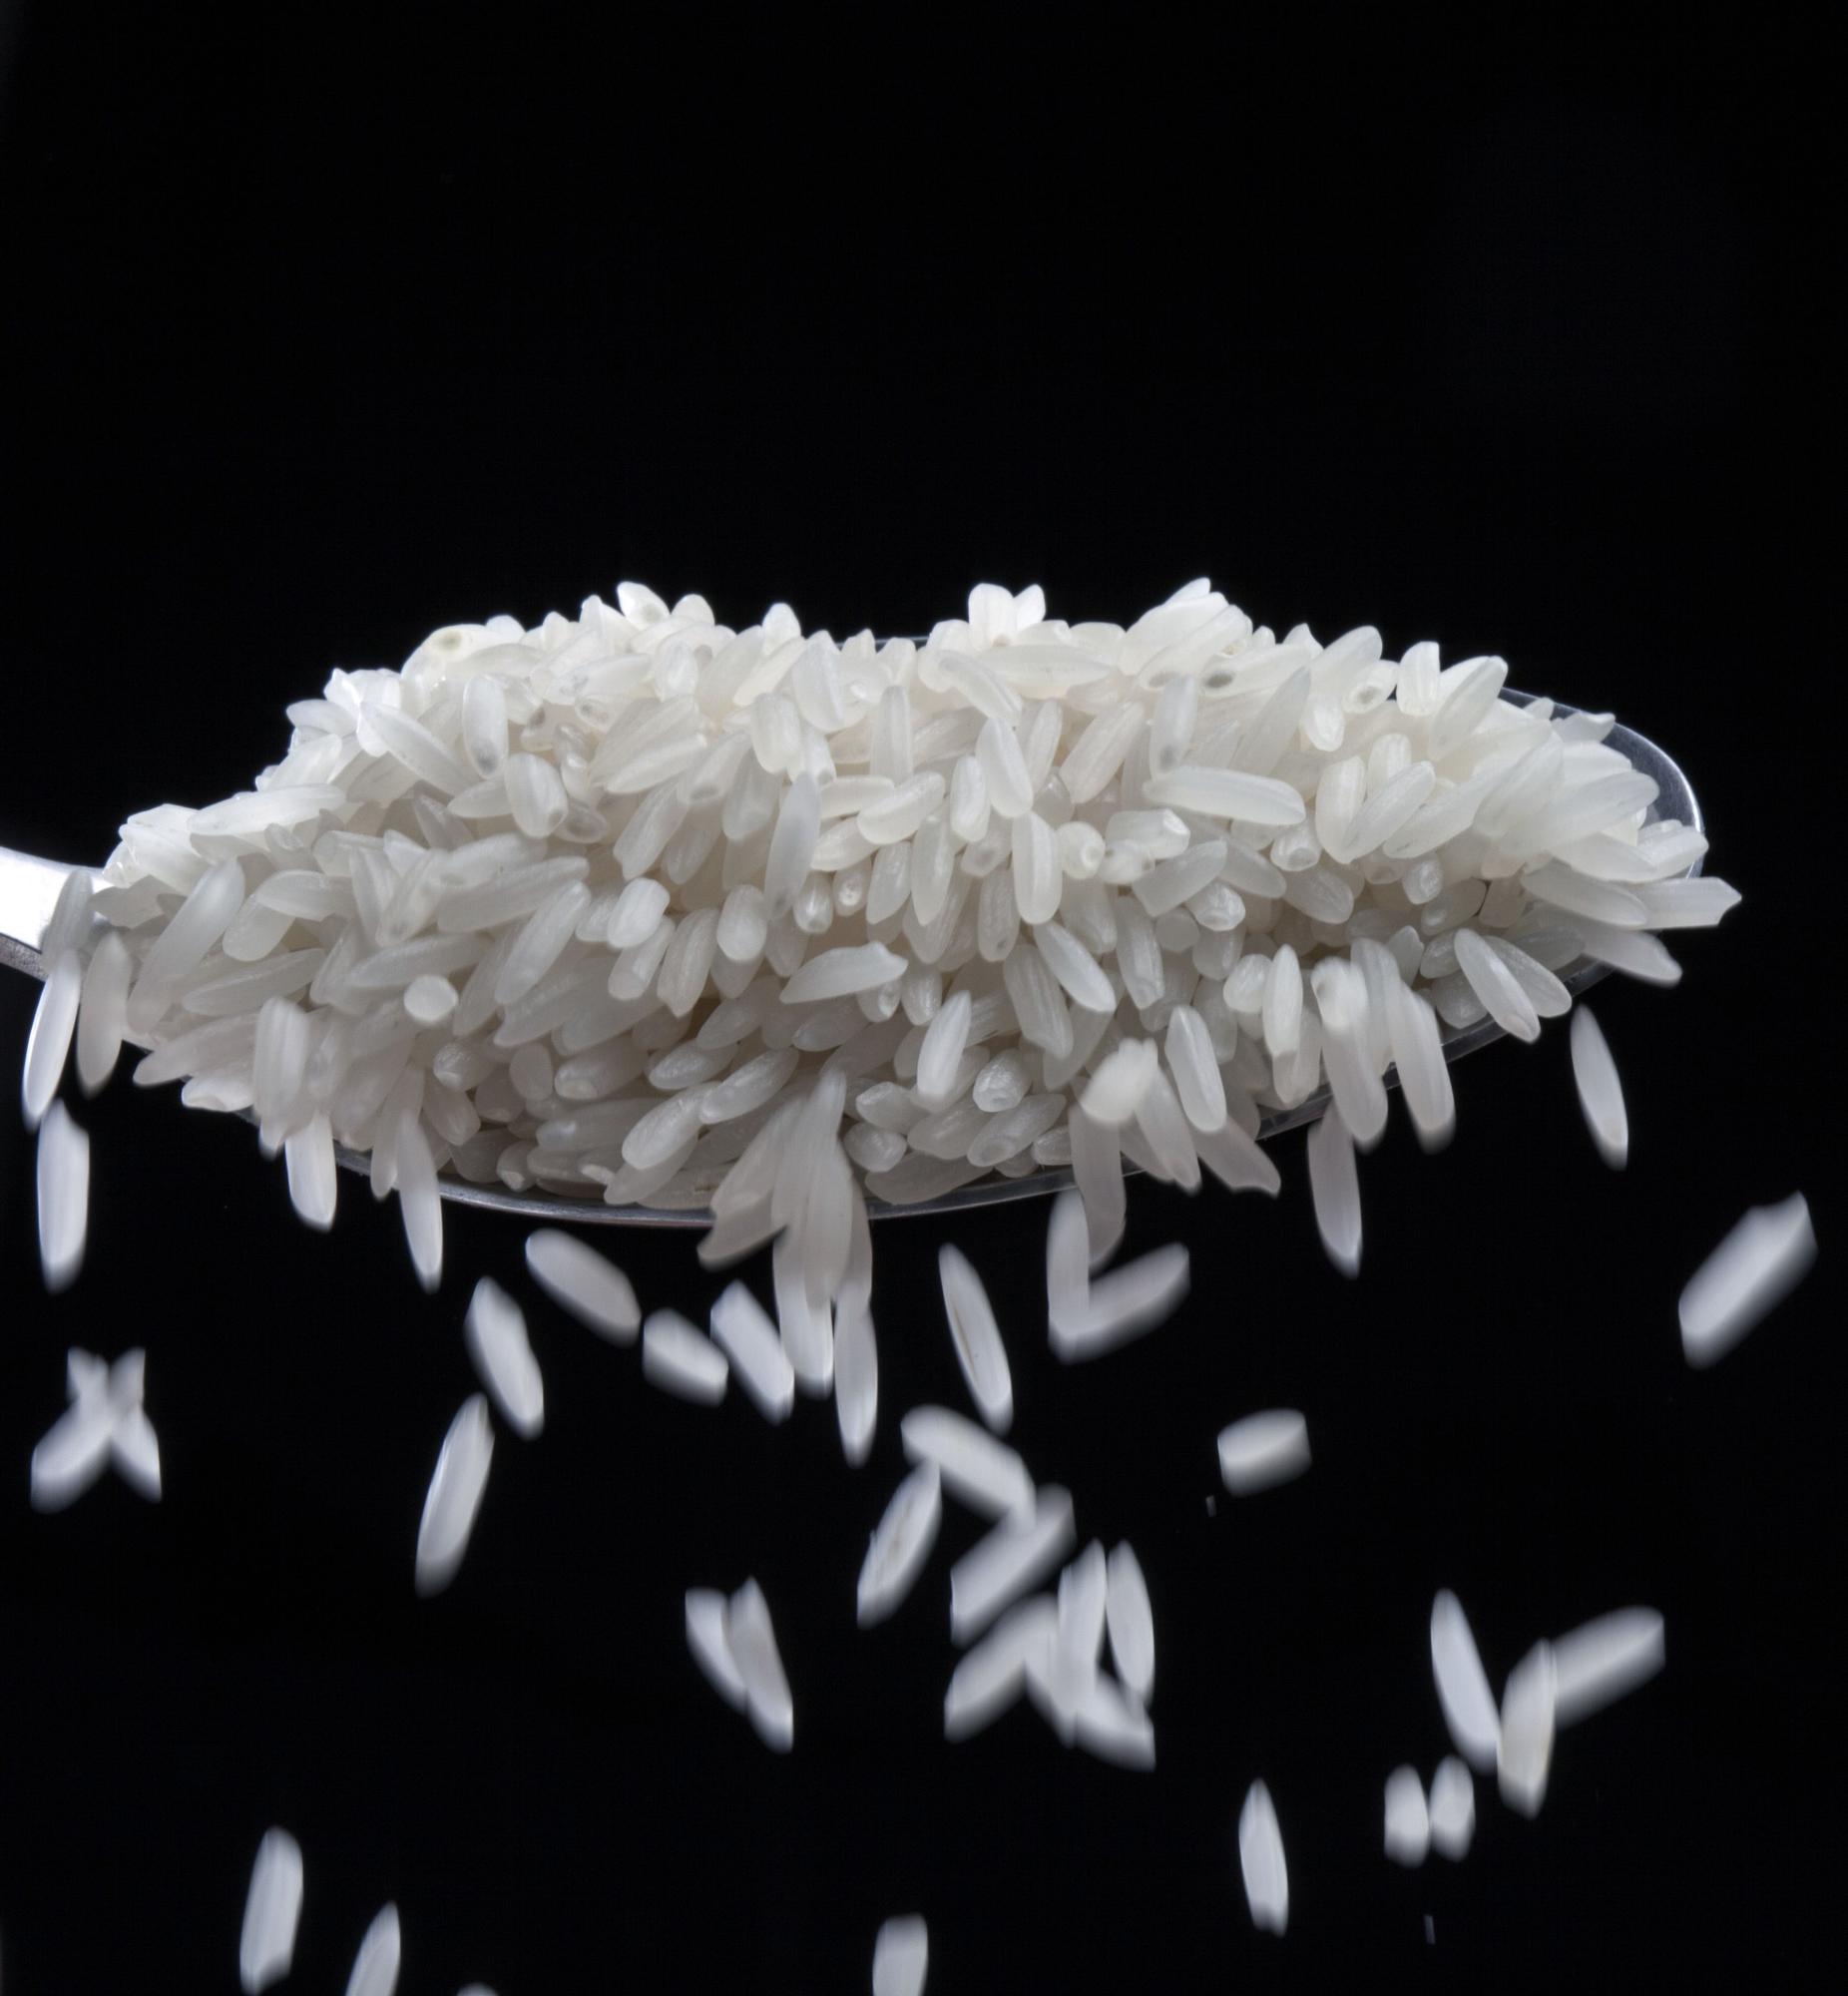 El arroz es un cereal con muchos nutrientes